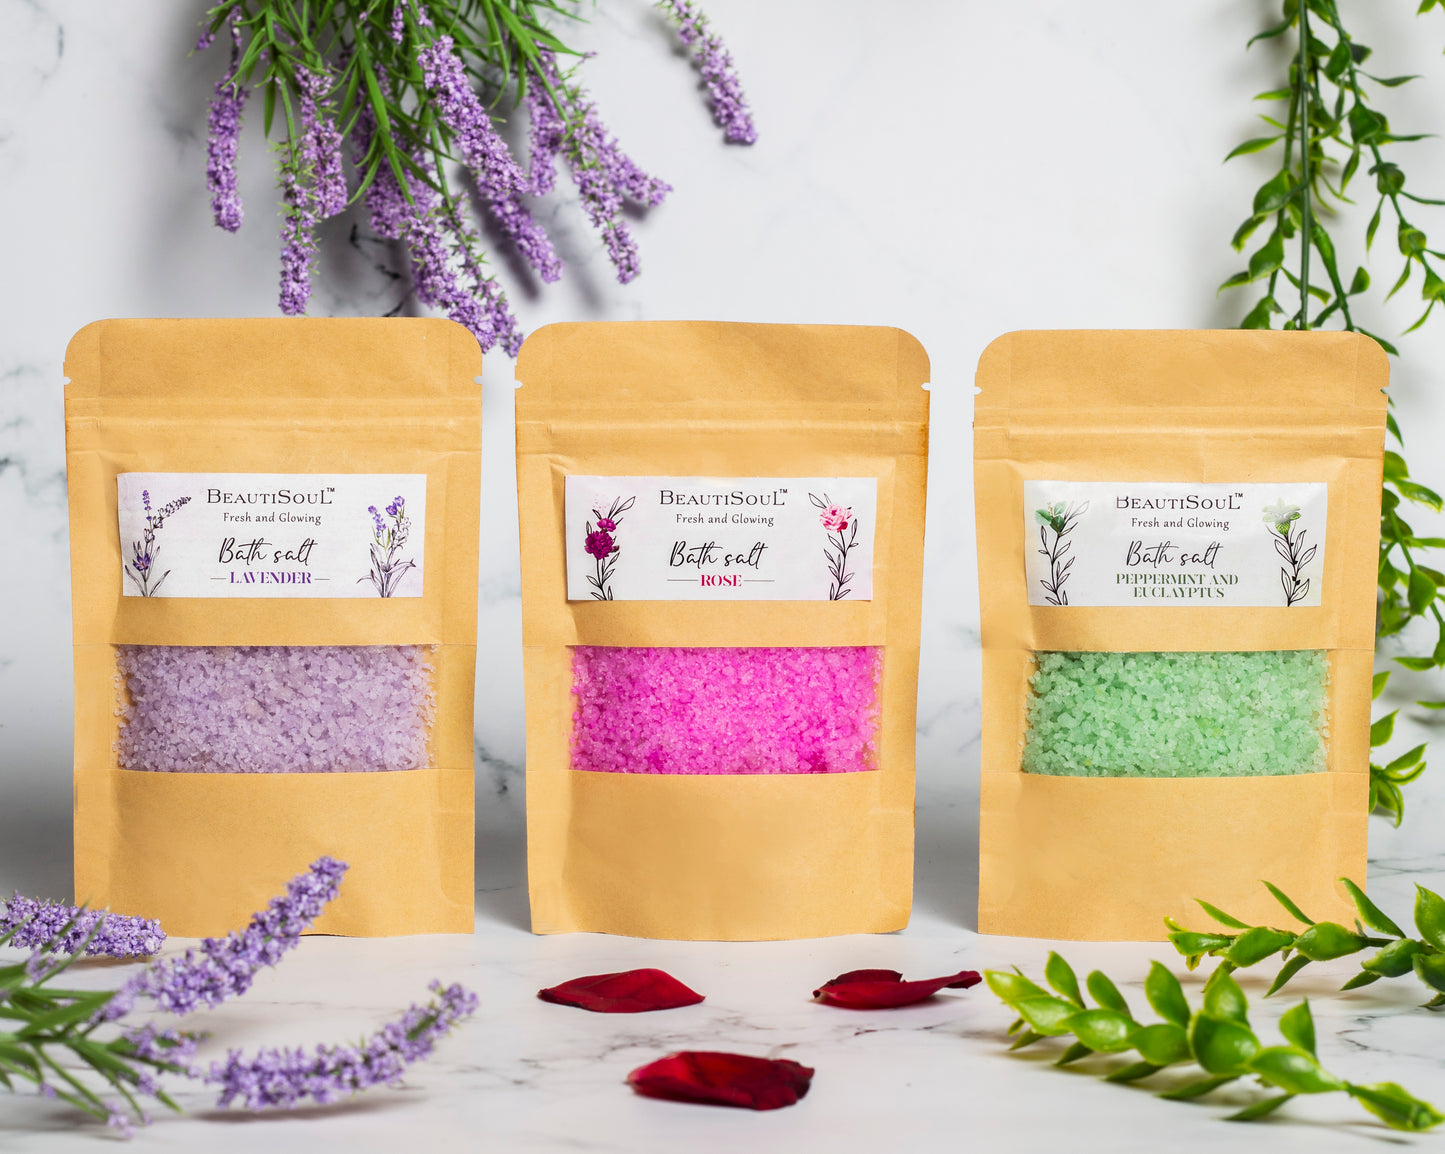 Beautisoul Lavender Bath Salt 100 g